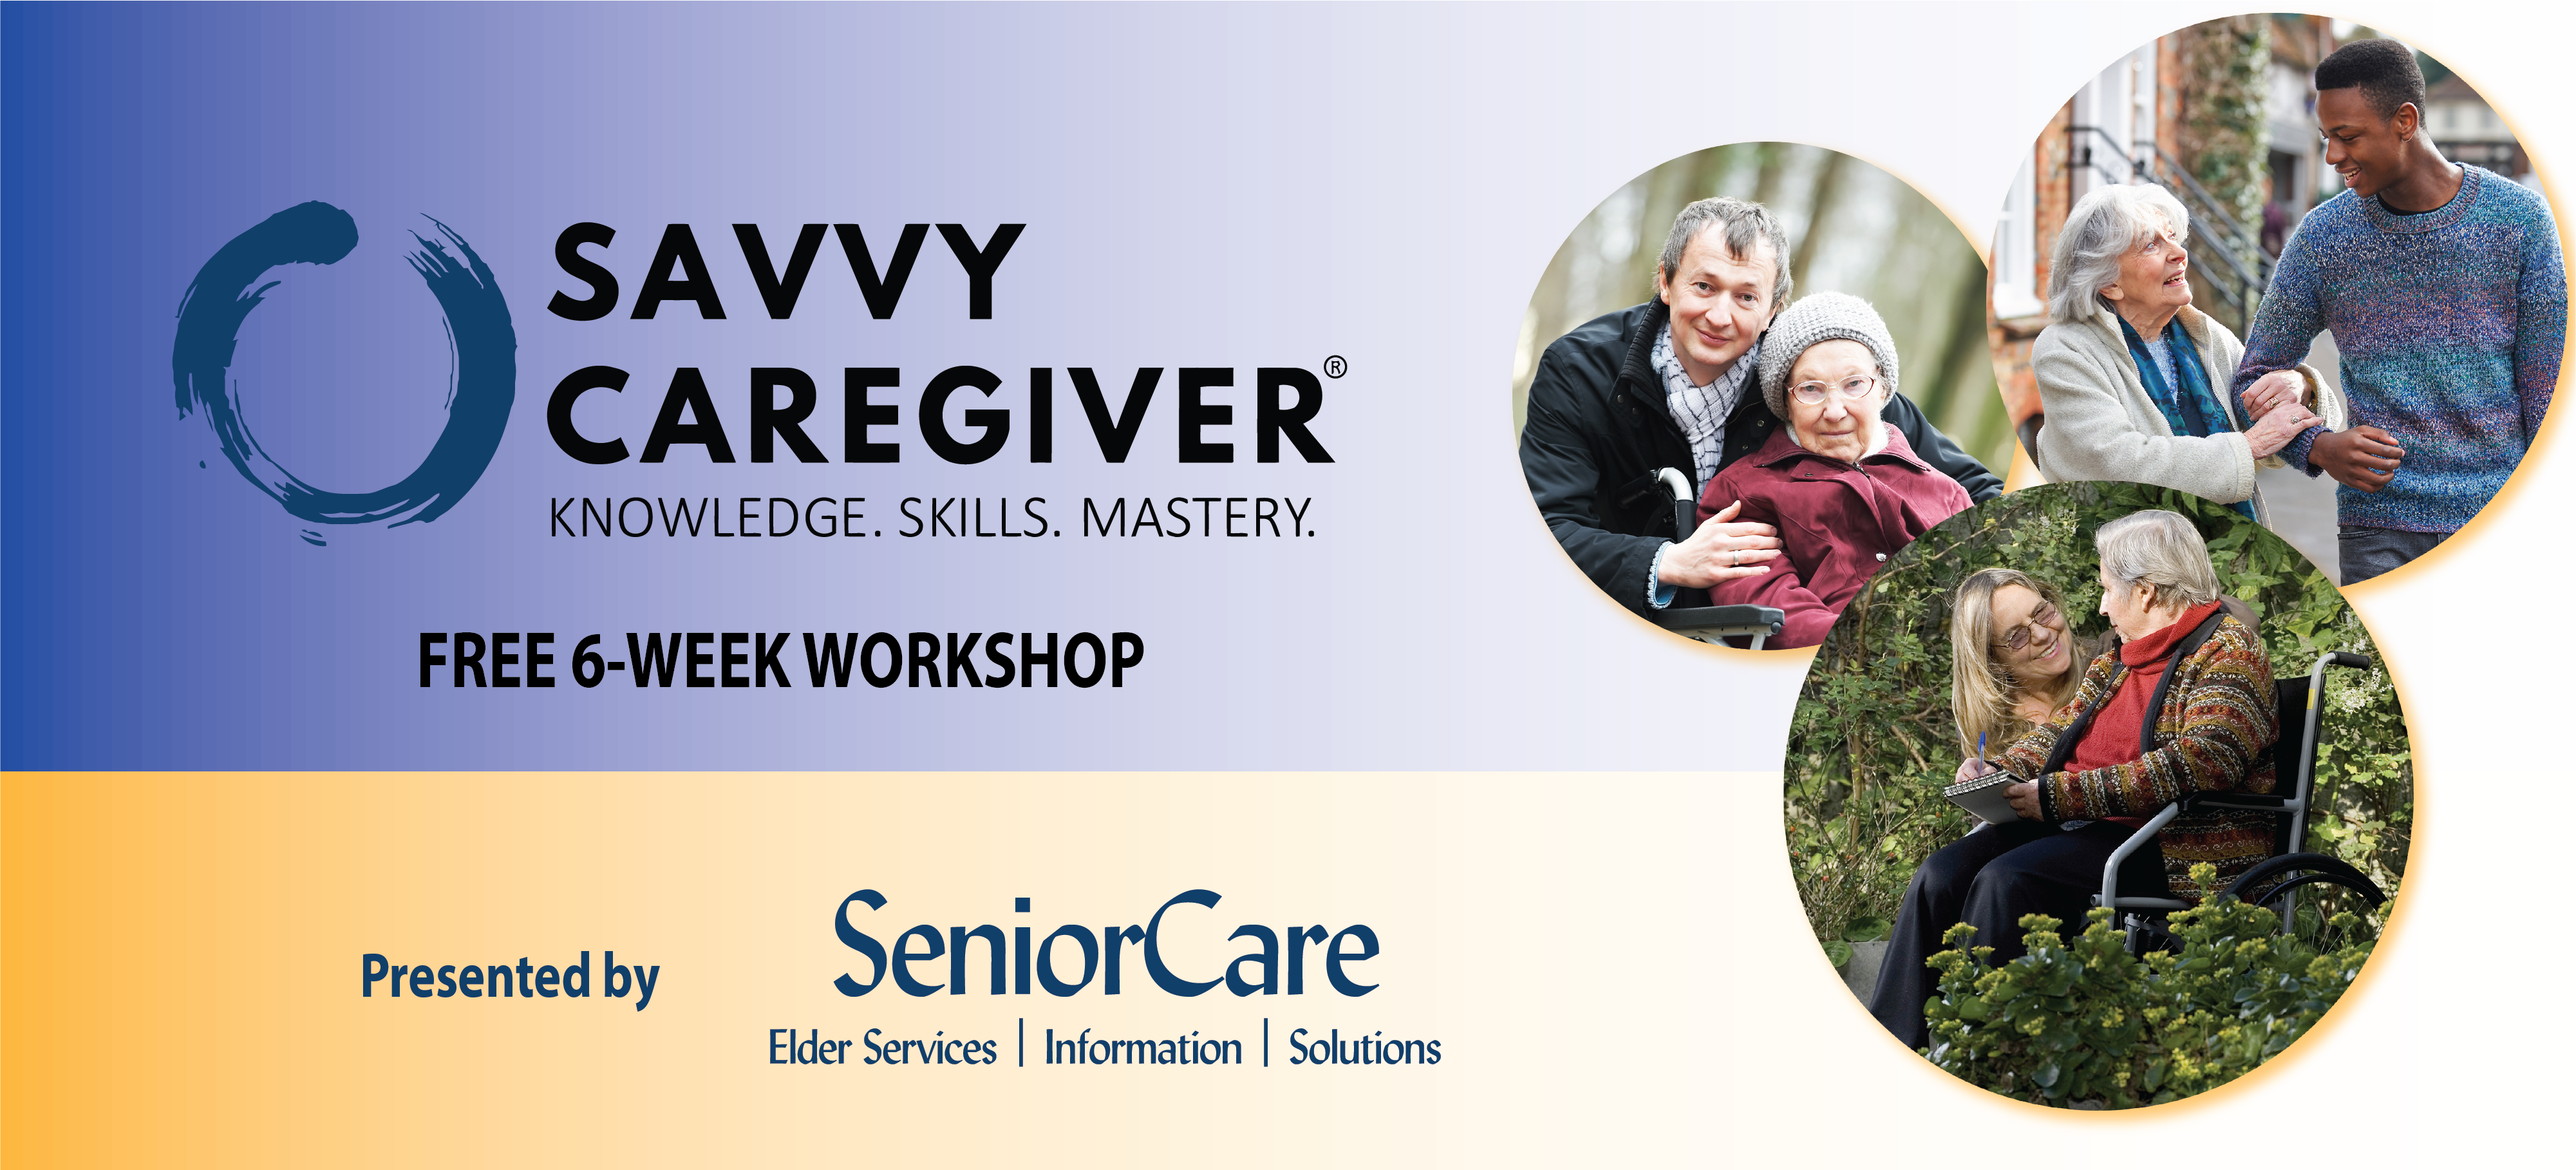 Savvy Caregiver graphic